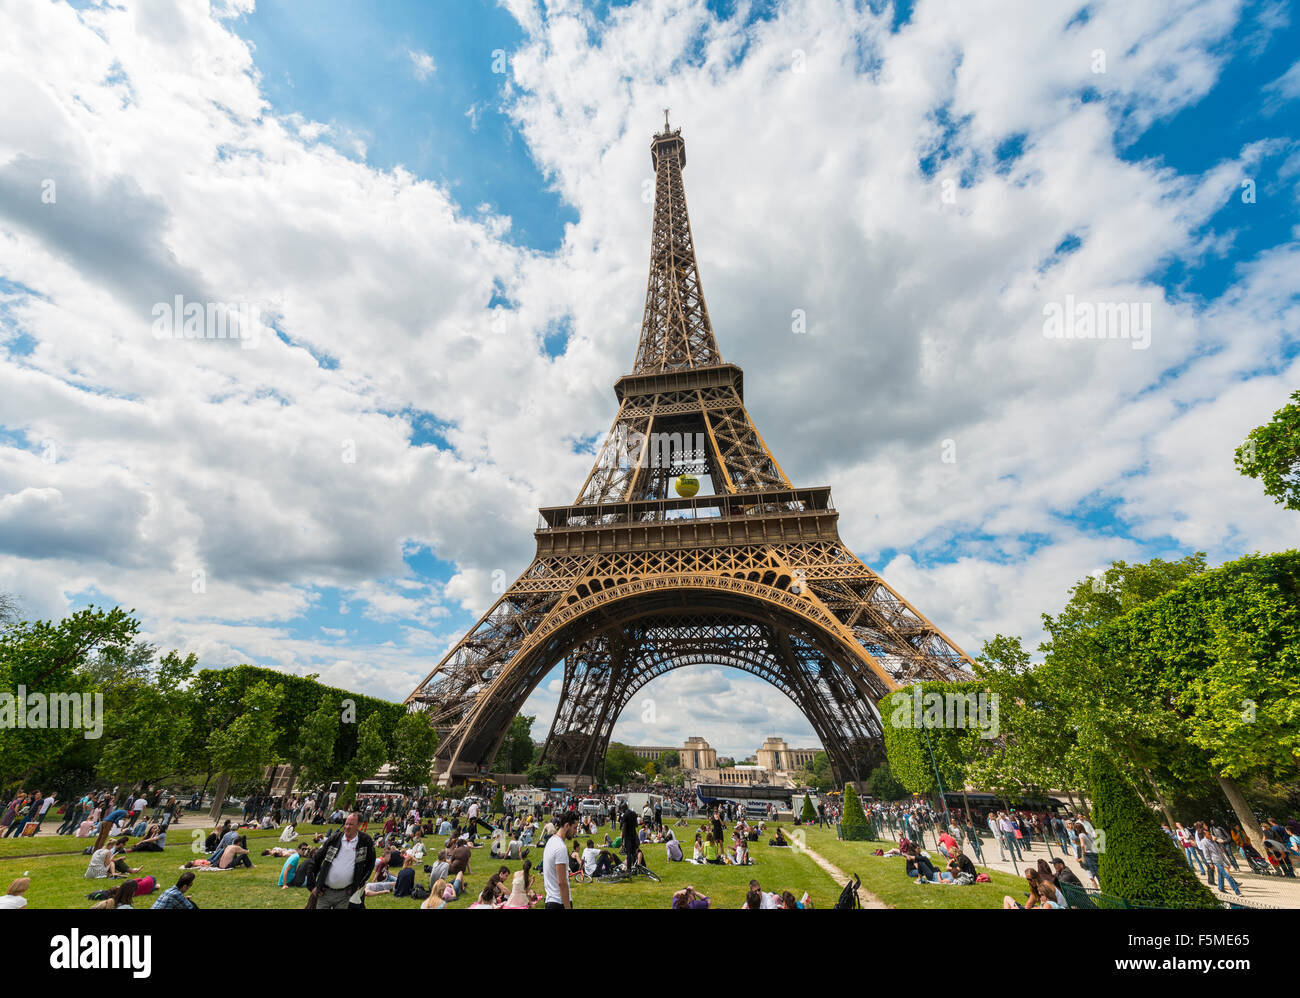 La Tour Eiffel, tour Eiffel, Champs de Mars, Paris, Ile-de-France, France Banque D'Images